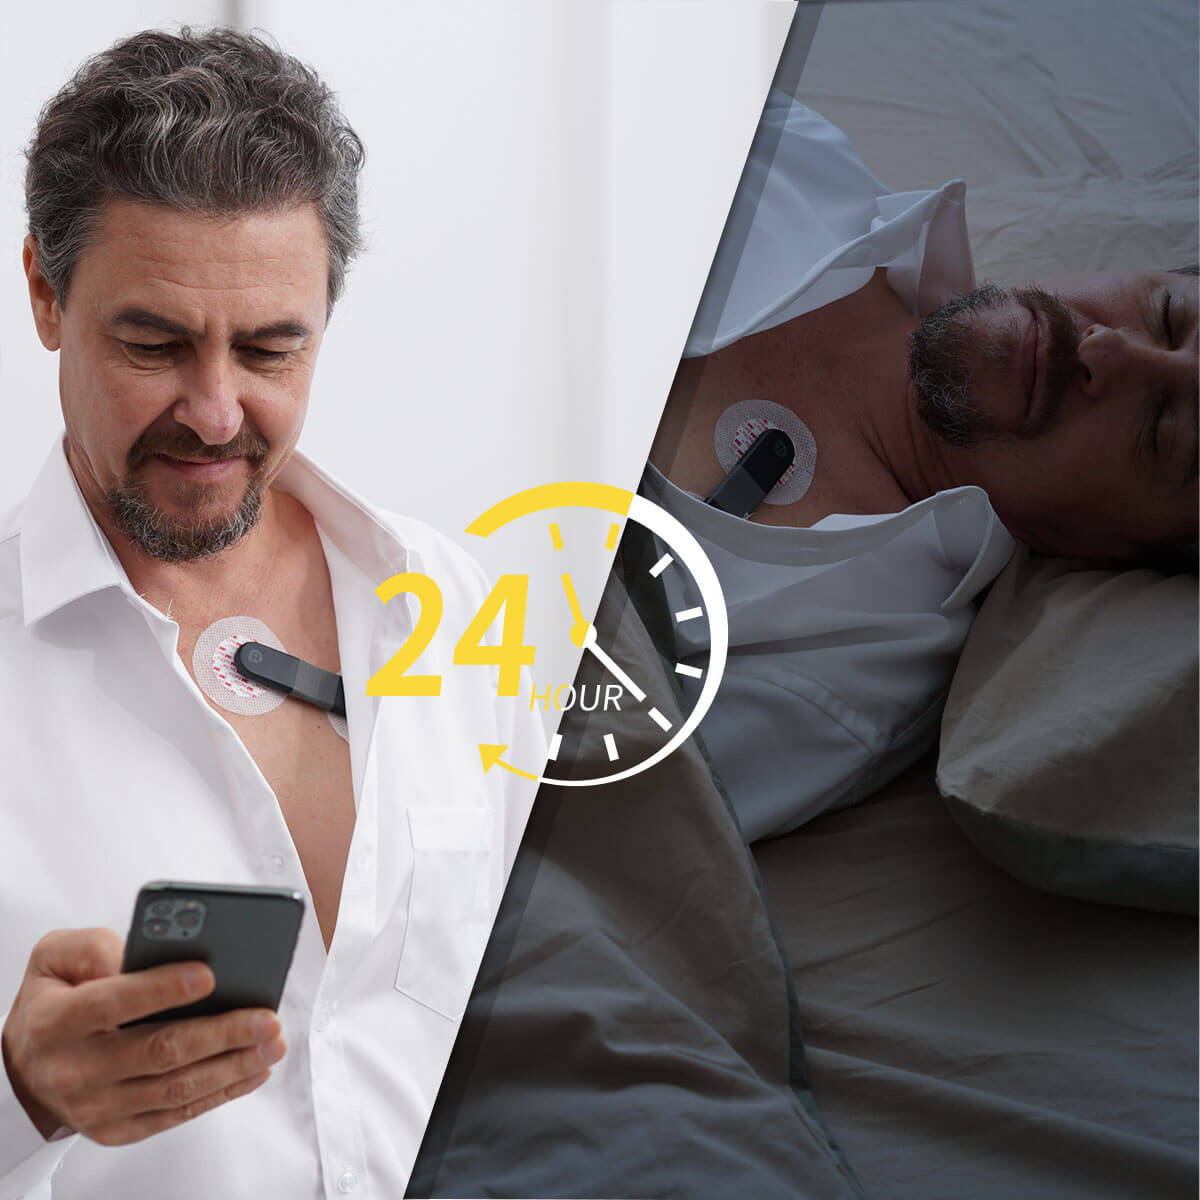 Monitor ecg 24 ore, monitor holter 24 ore, monitor della salute del cuore 24 ore